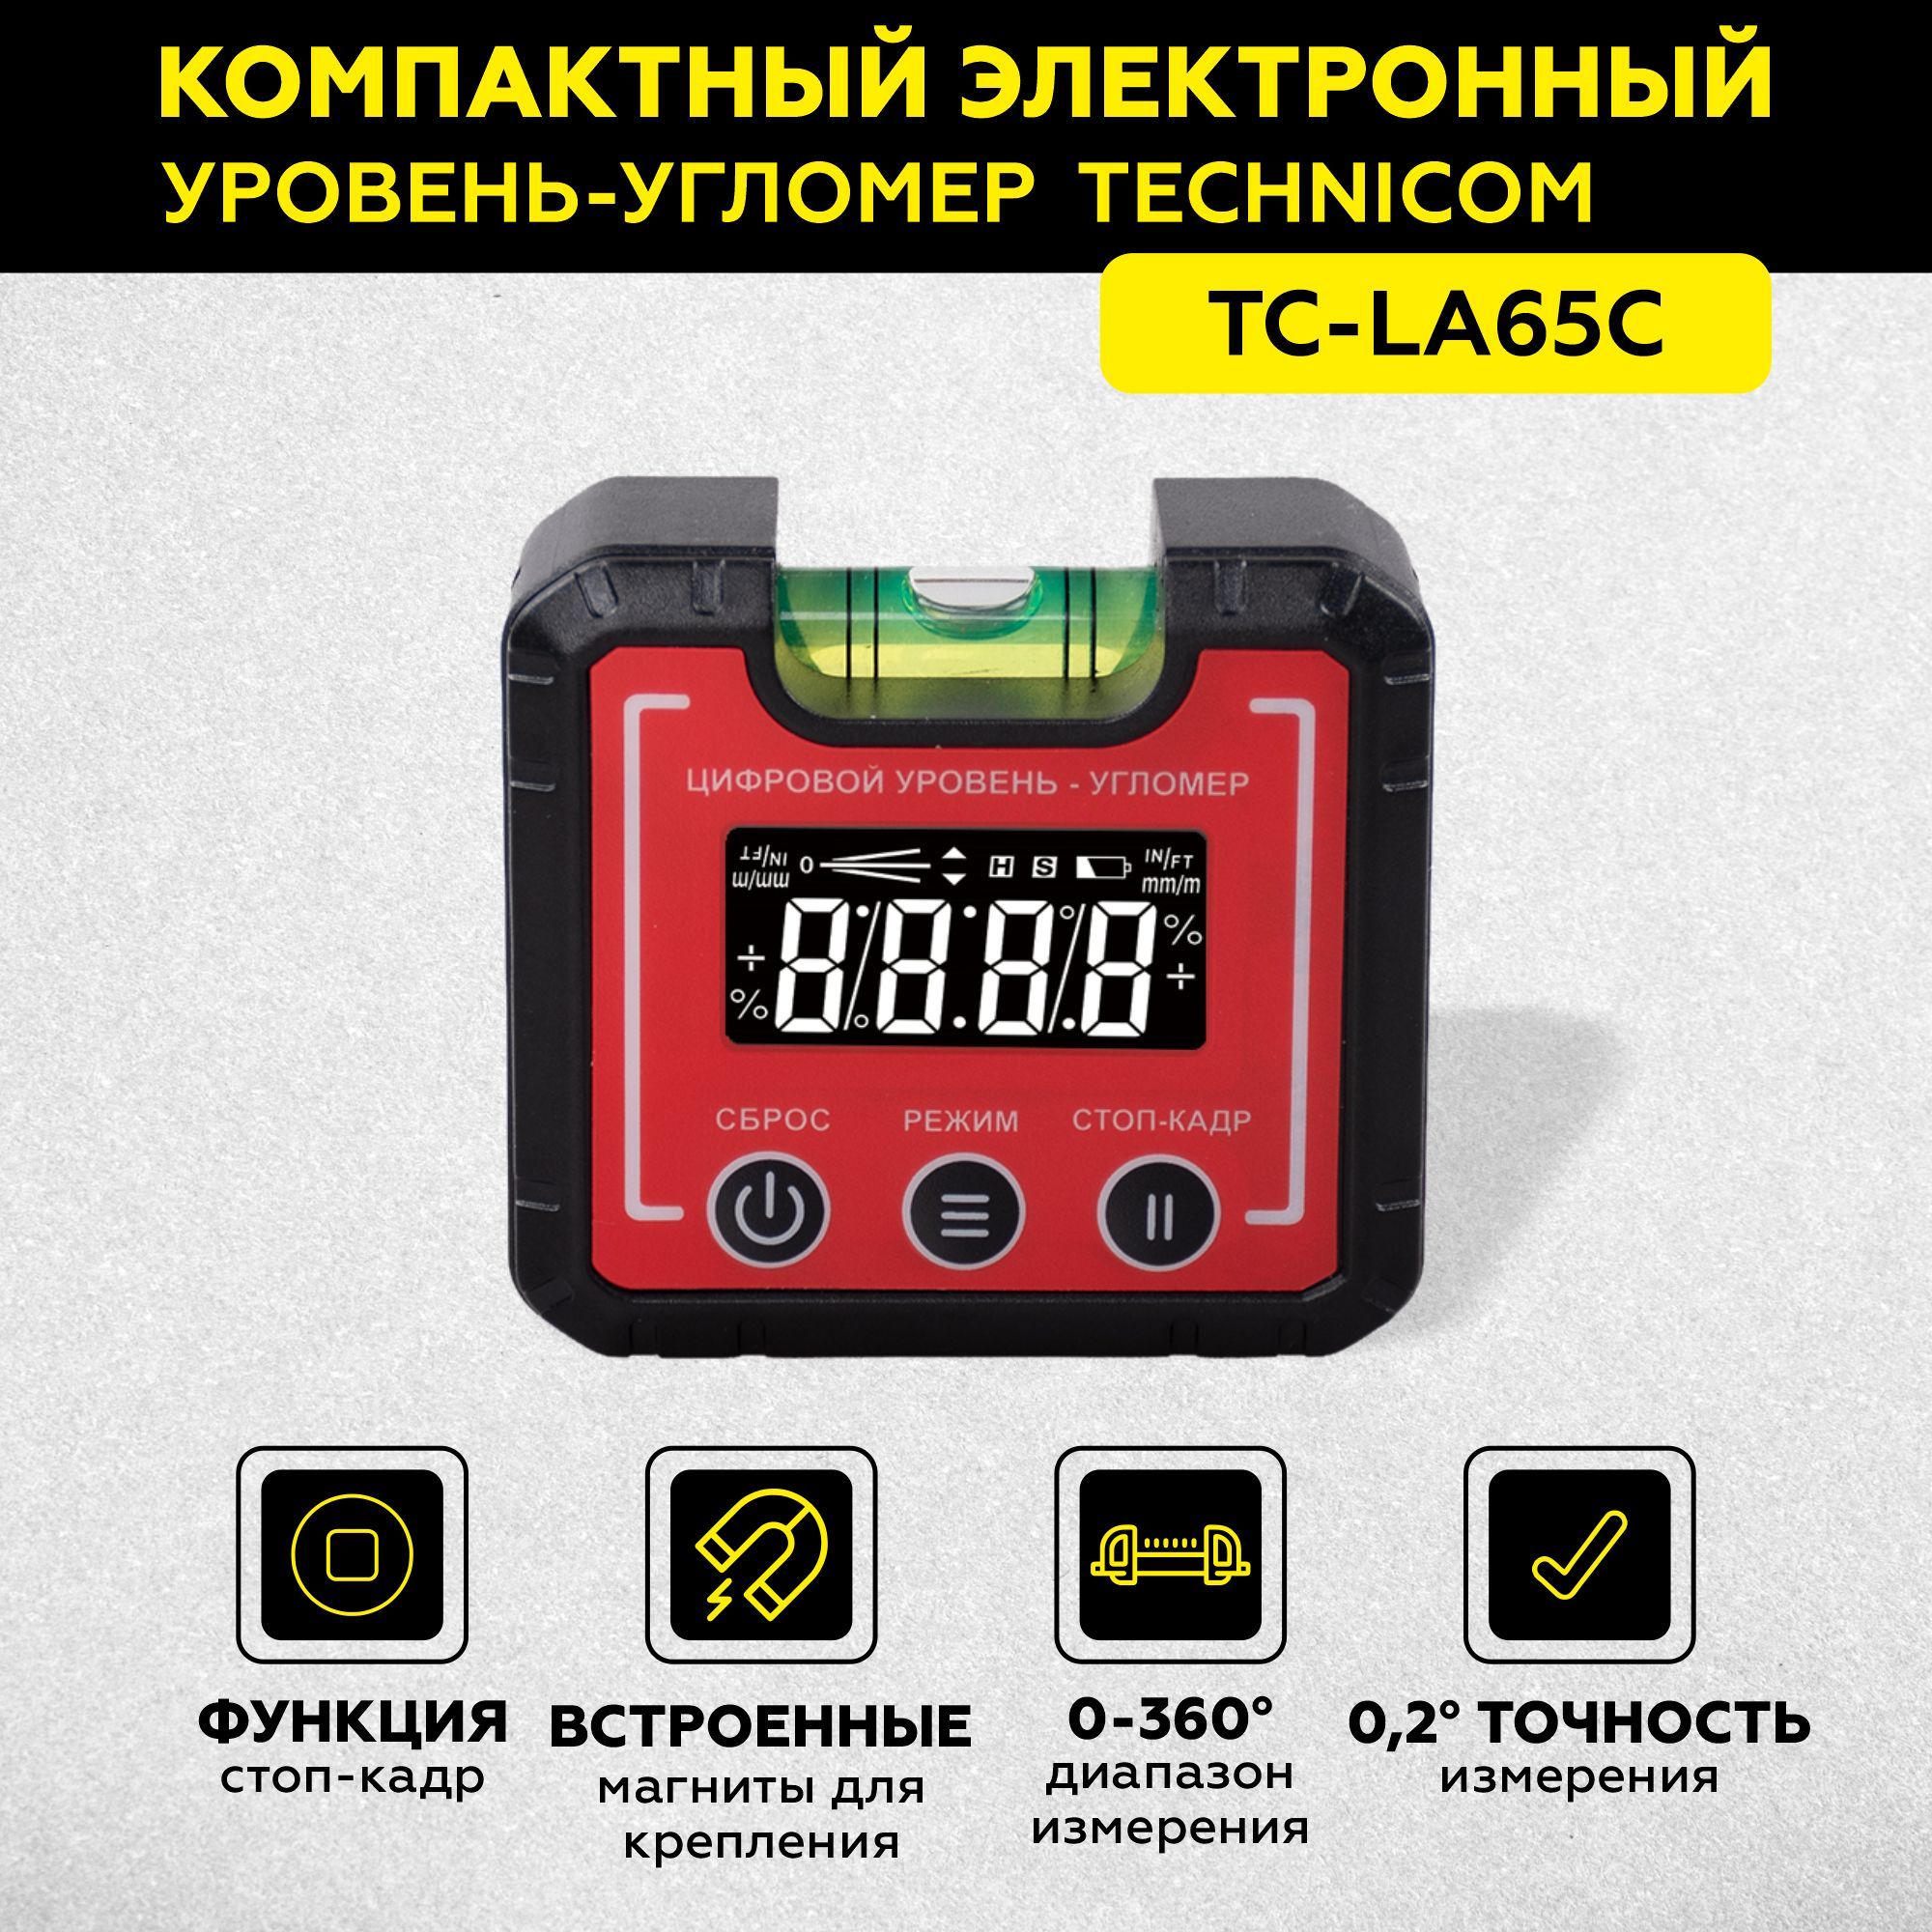 Электронный уровень-угломер с магнитом TECHNICOM 65 мм TC-LA65C электронный детектор дерева металла и электропроводки technicom